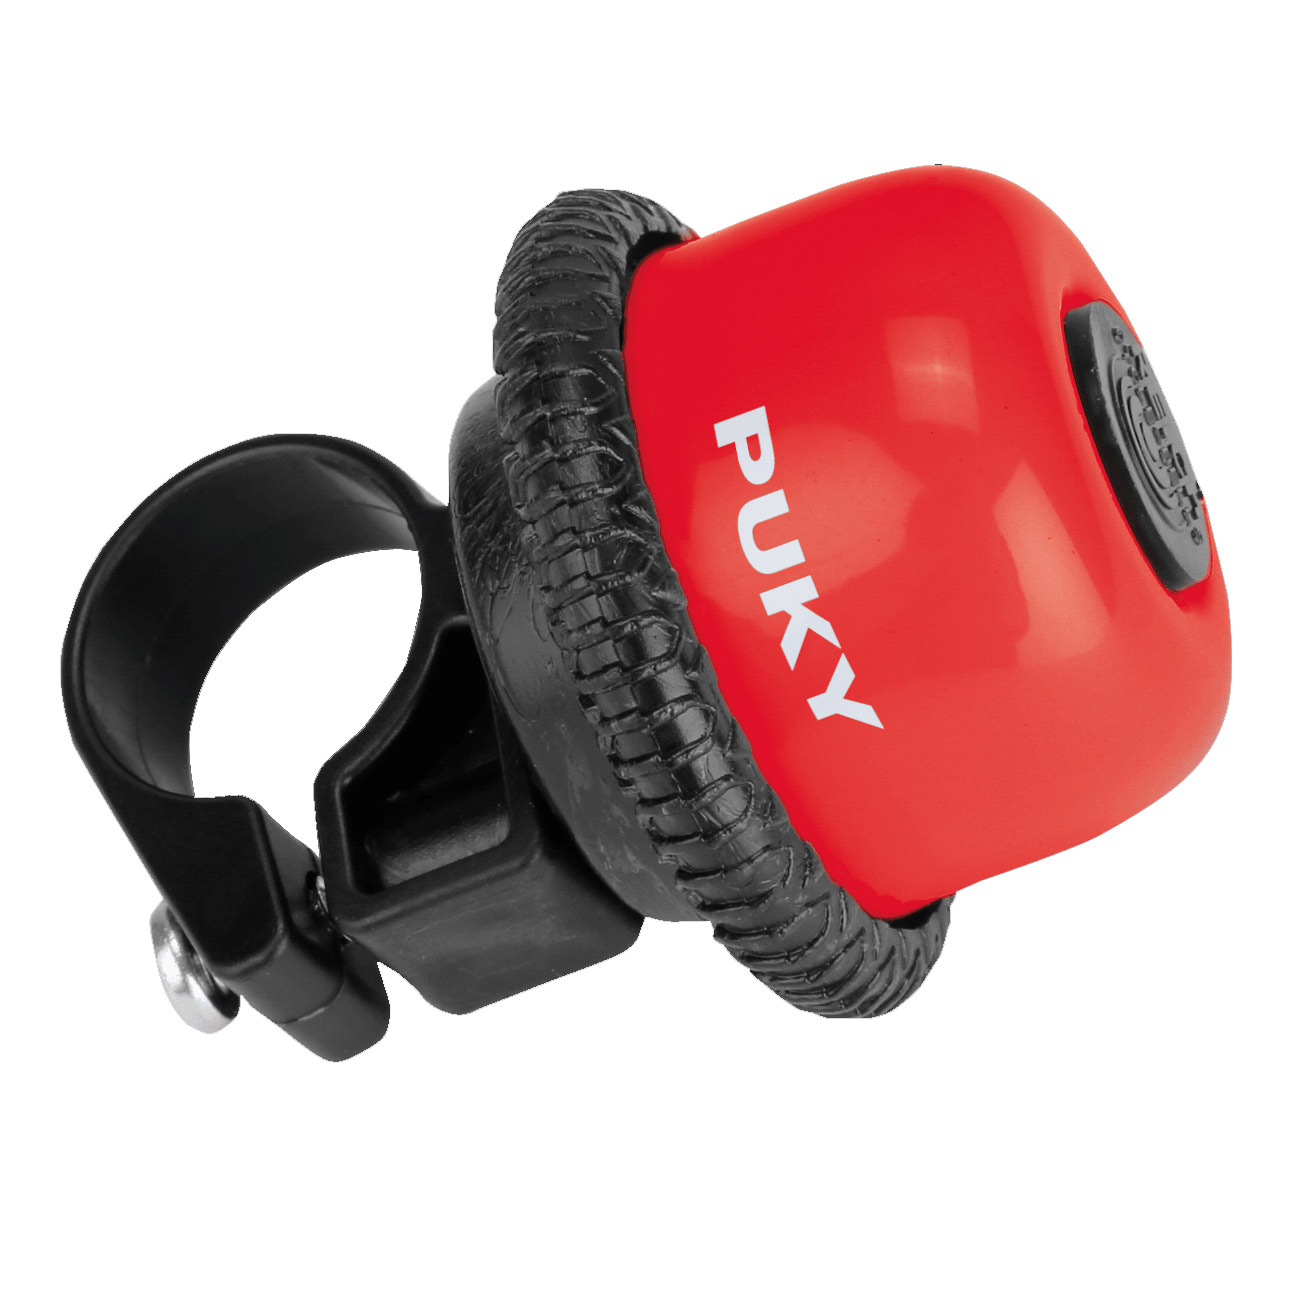 Productfoto van Puky G 20 Roterende Speelbel - rood